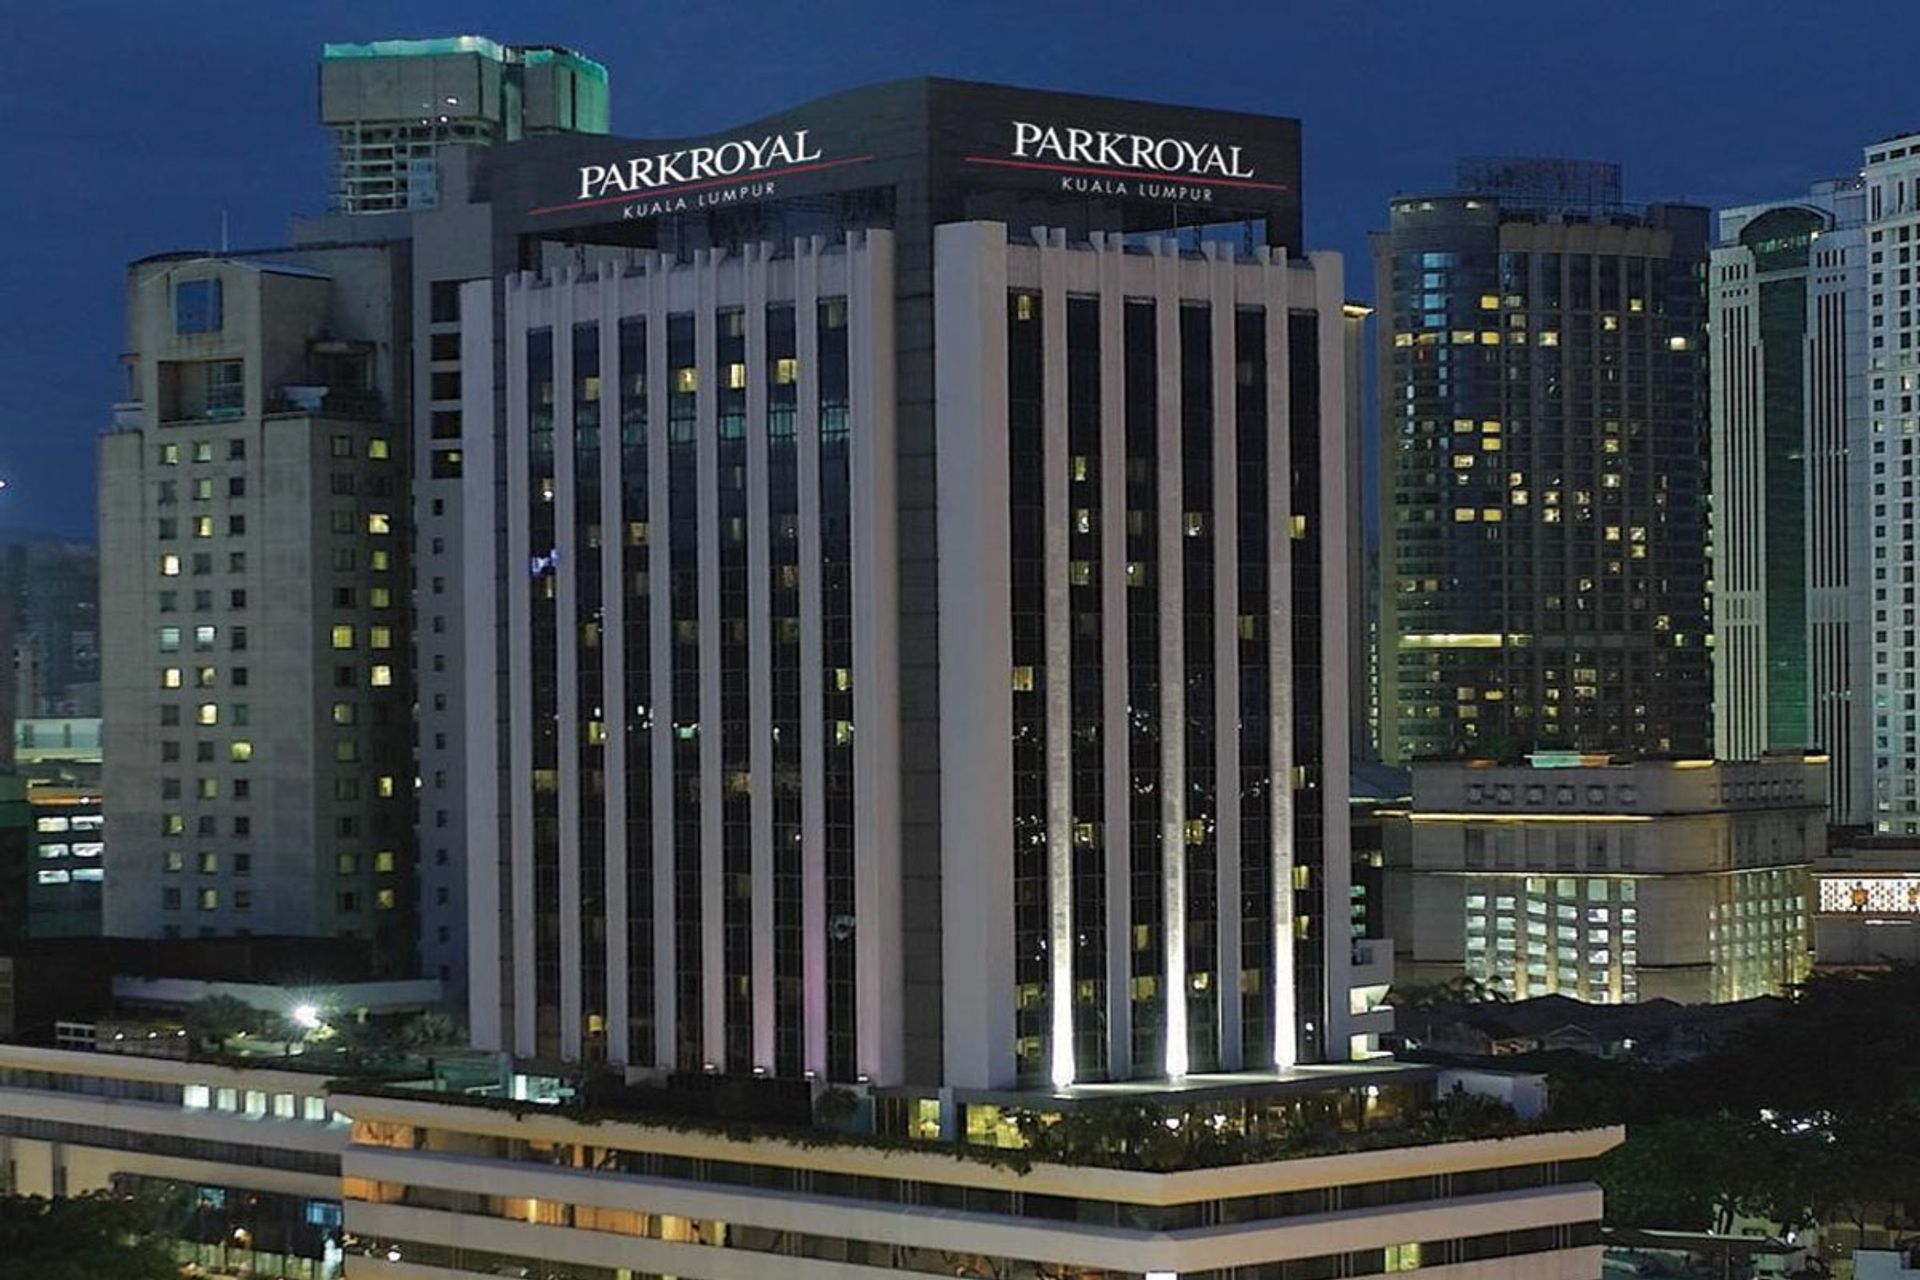  Parkroyal Hotel Kuala Lumpur